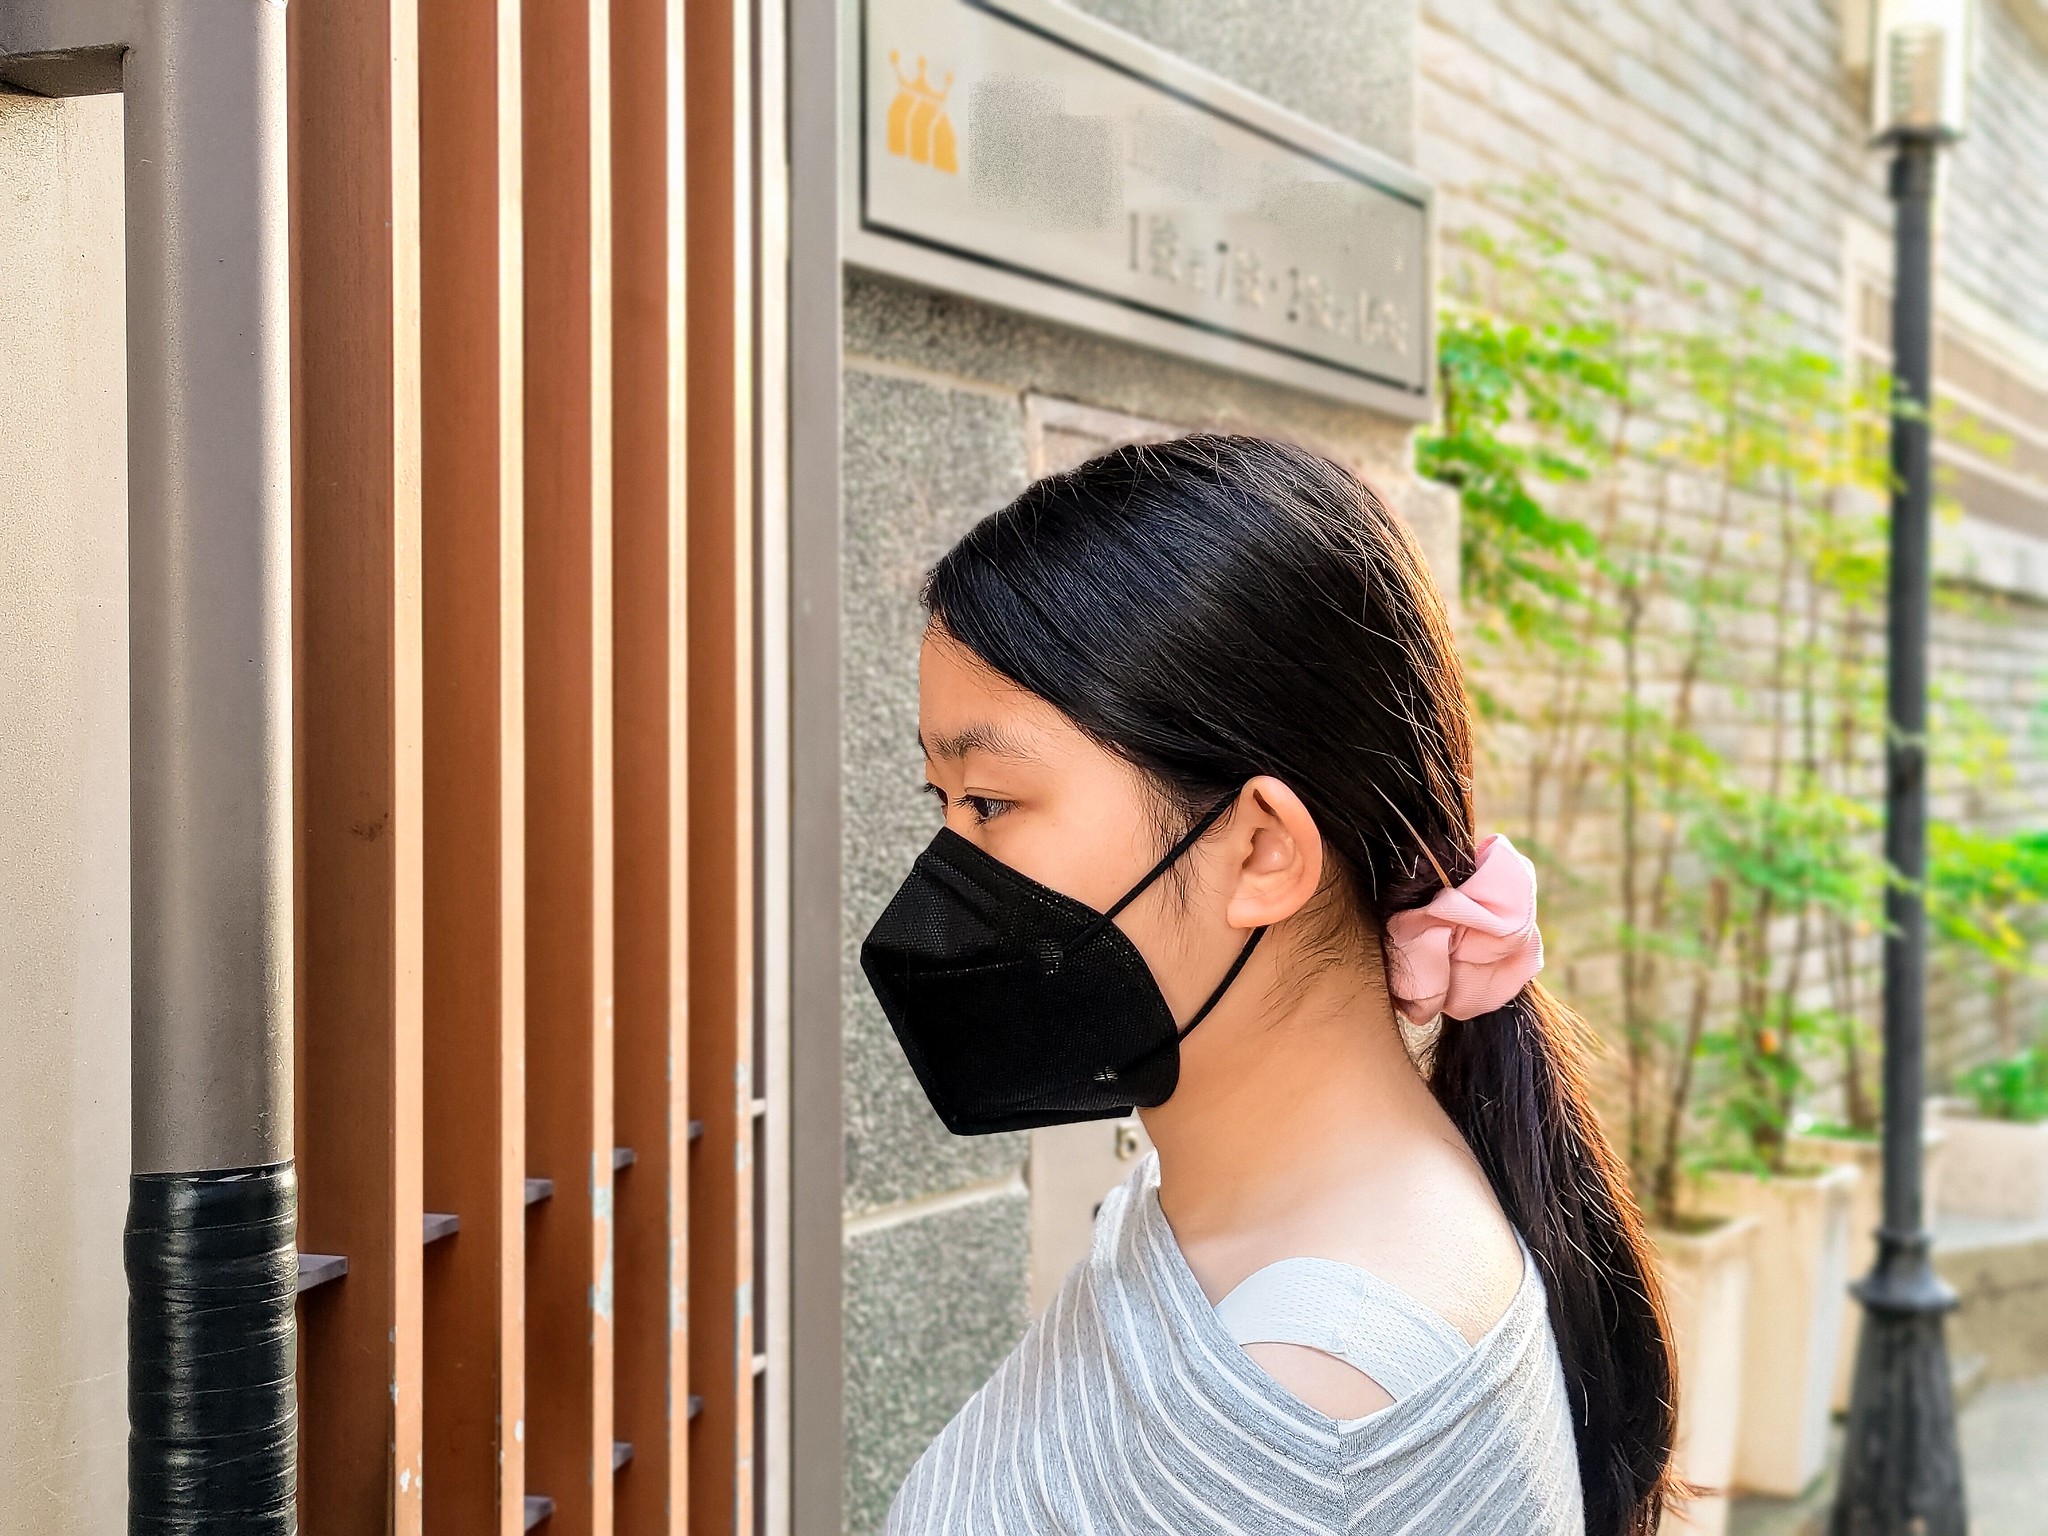 生活．晉沛生醫TN95成人醫用立體口罩．台灣製造新型專利四層過濾口罩．透氣舒適